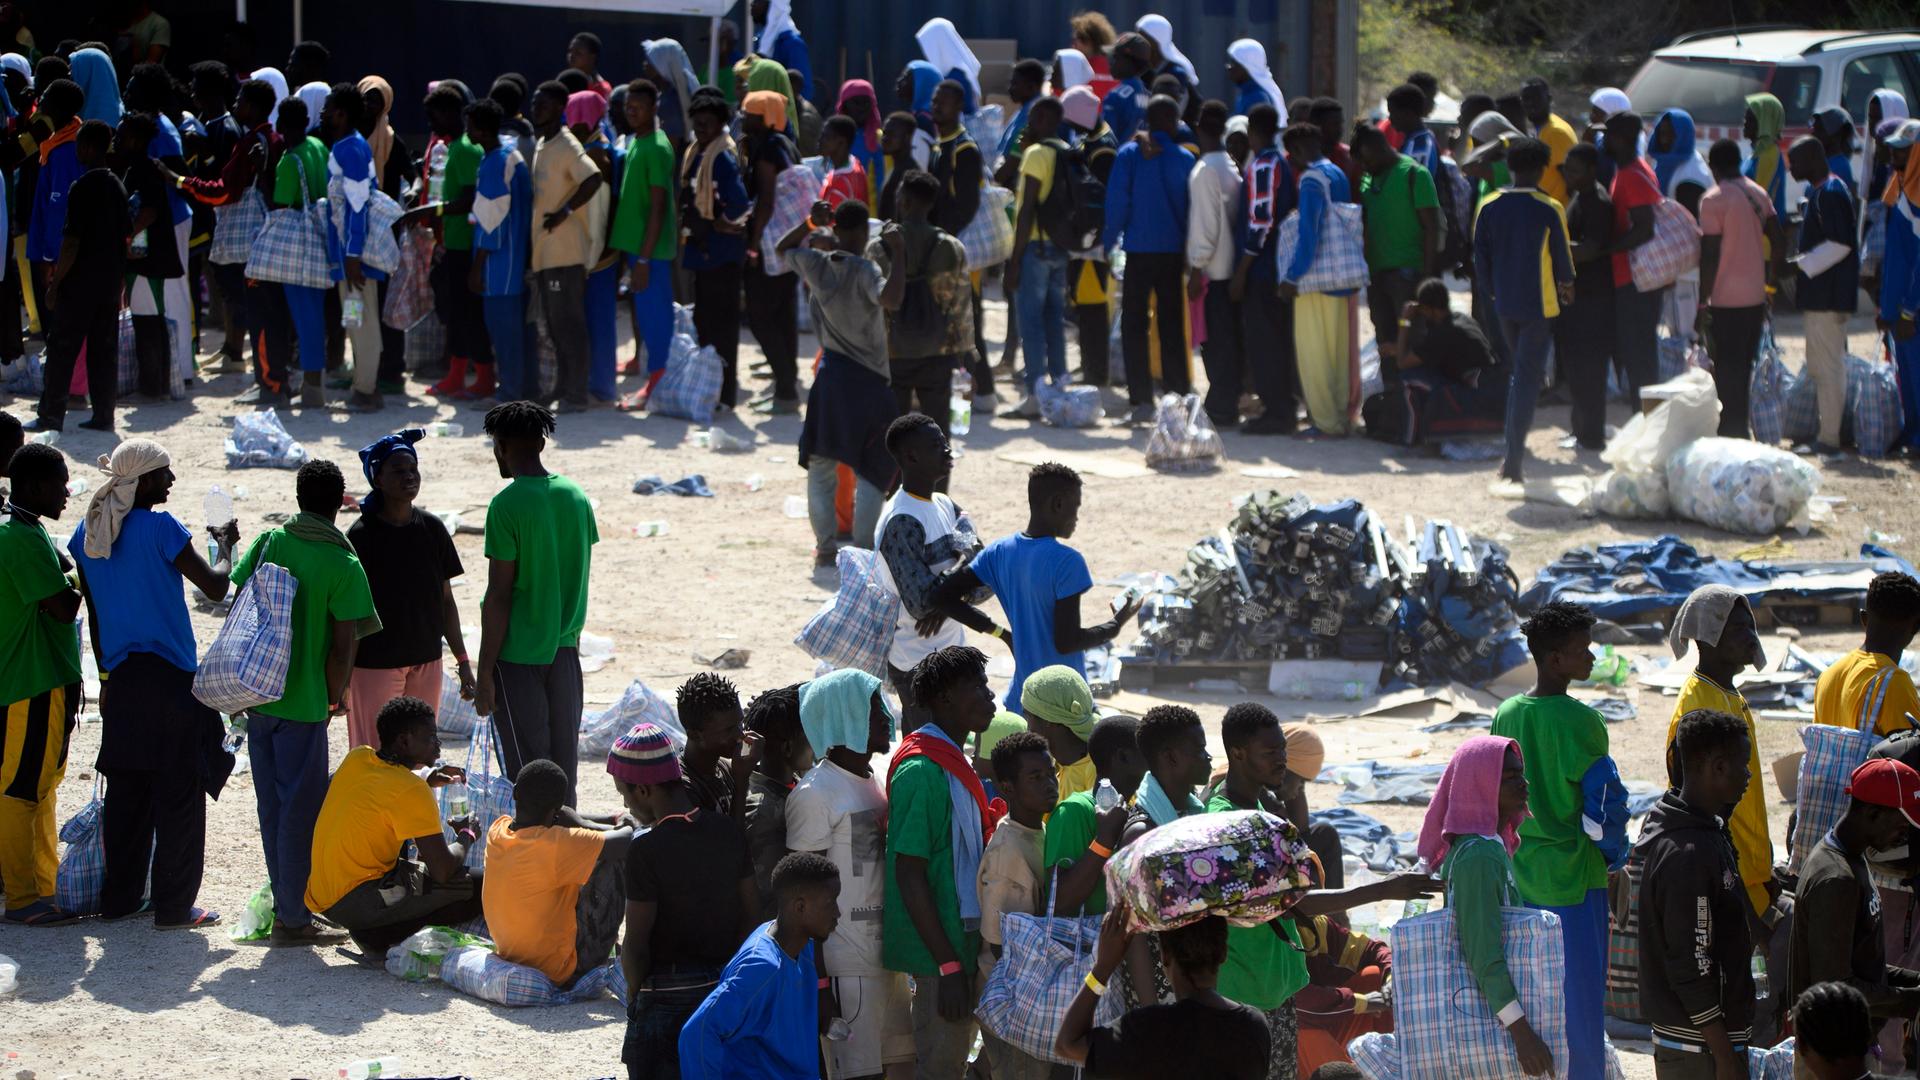 Migranten mit Kleiderbündeln und Taschen stehen in langen Schlangen auf staubigem Boden im Aufnahmezentrum auf der italienischen Insel Lampedusa.